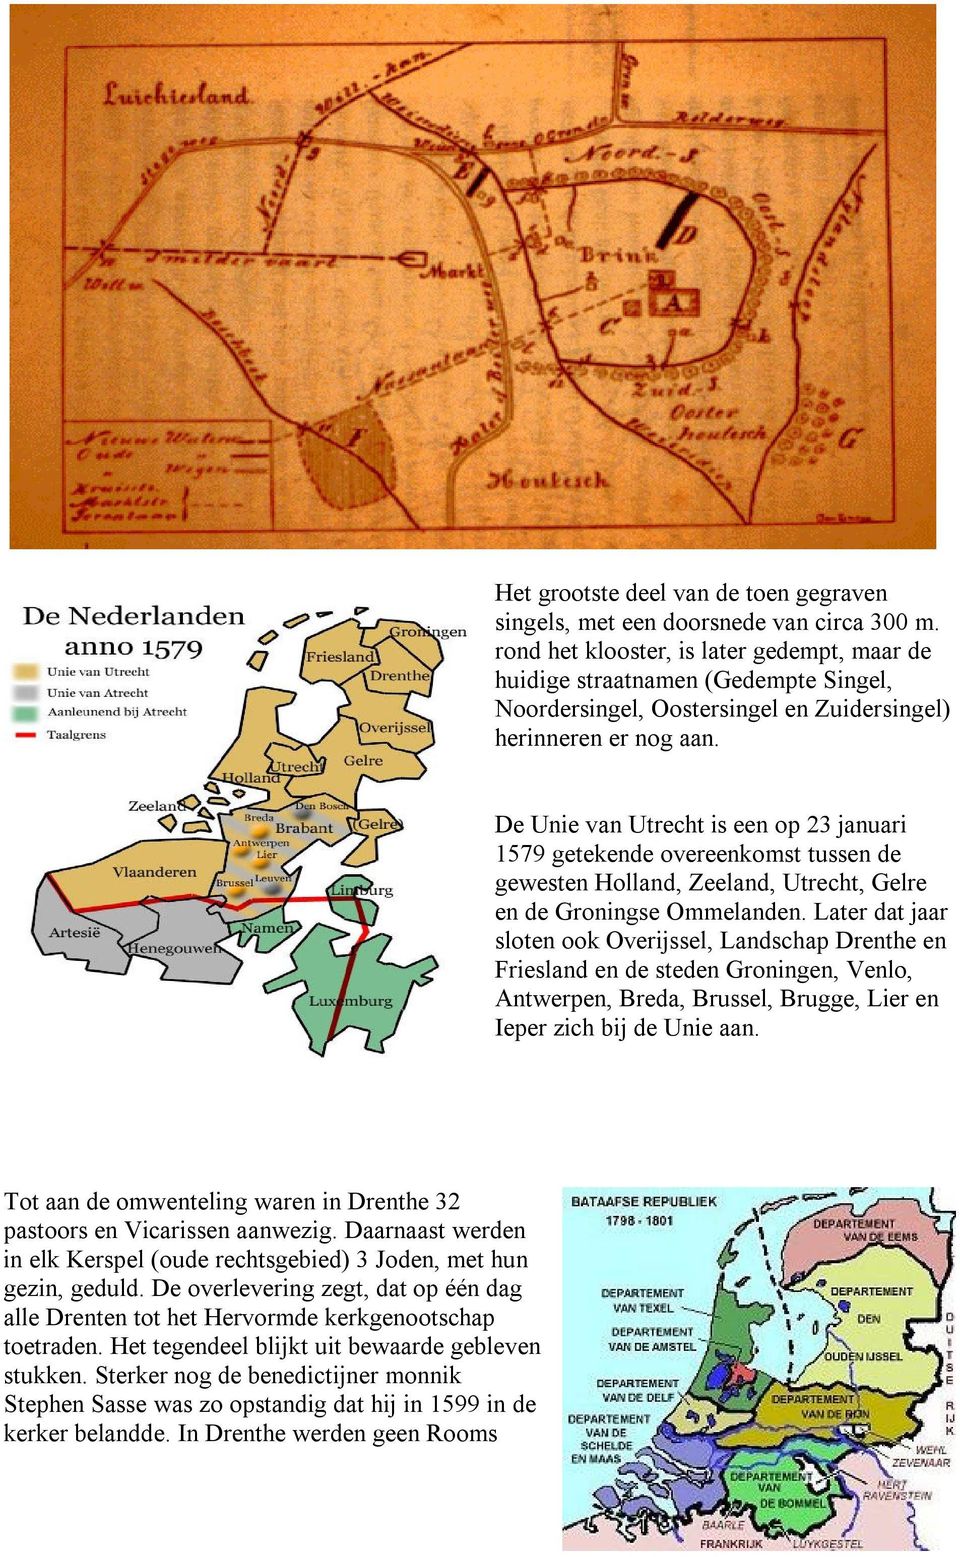 De Unie van Utrecht is een op 23 januari 1579 getekende overeenkomst tussen de gewesten Holland, Zeeland, Utrecht, Gelre en de Groningse Ommelanden.